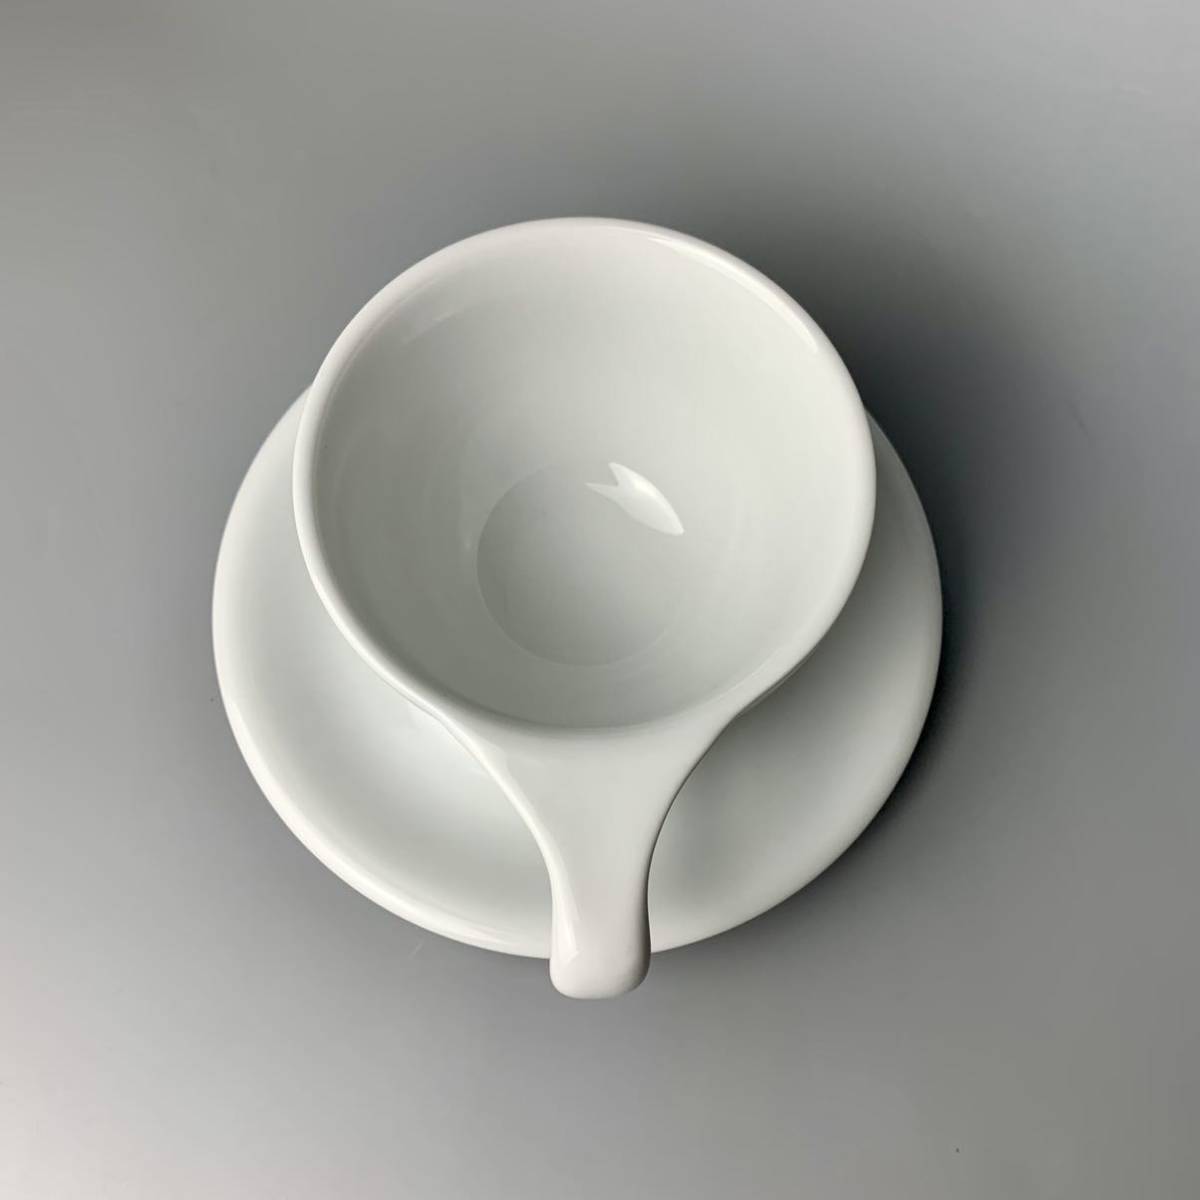 キッチン、台所用品 コーヒー、ティー用品 notNeutral ノットニュートラル LN Latte Cup Saucer ラテカップ 